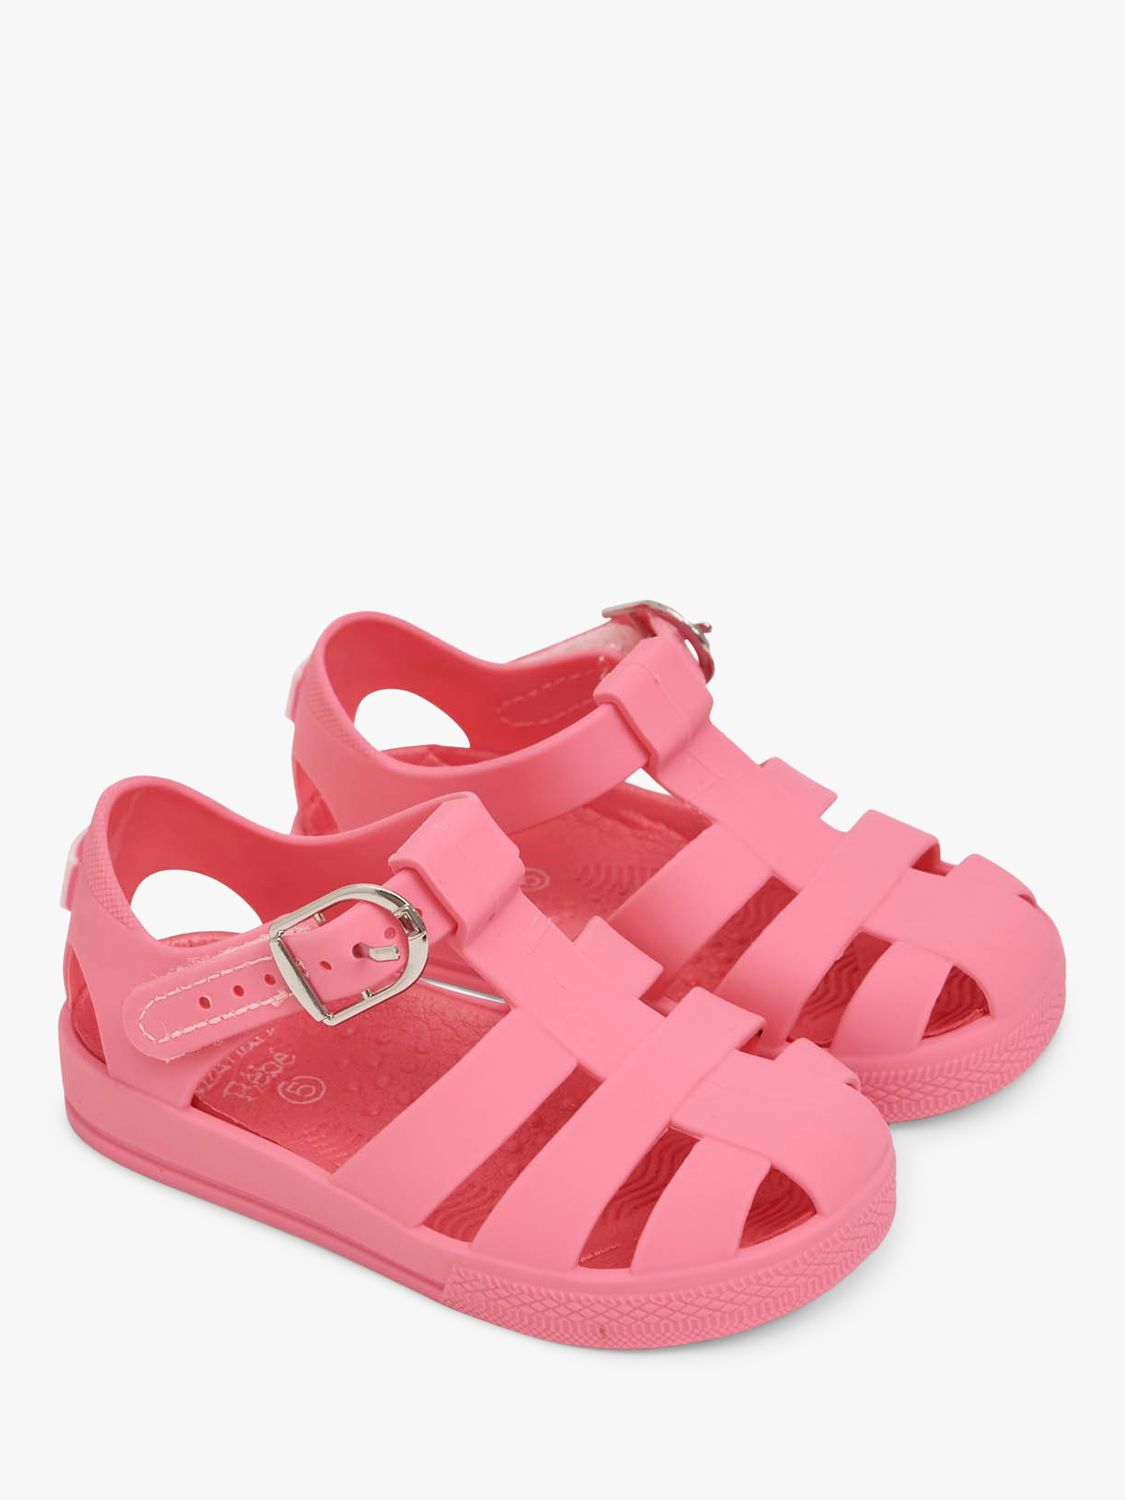 JoJo Maman Bébé Kids' Jelly Buckle Sandals, Pink, 4 Jnr